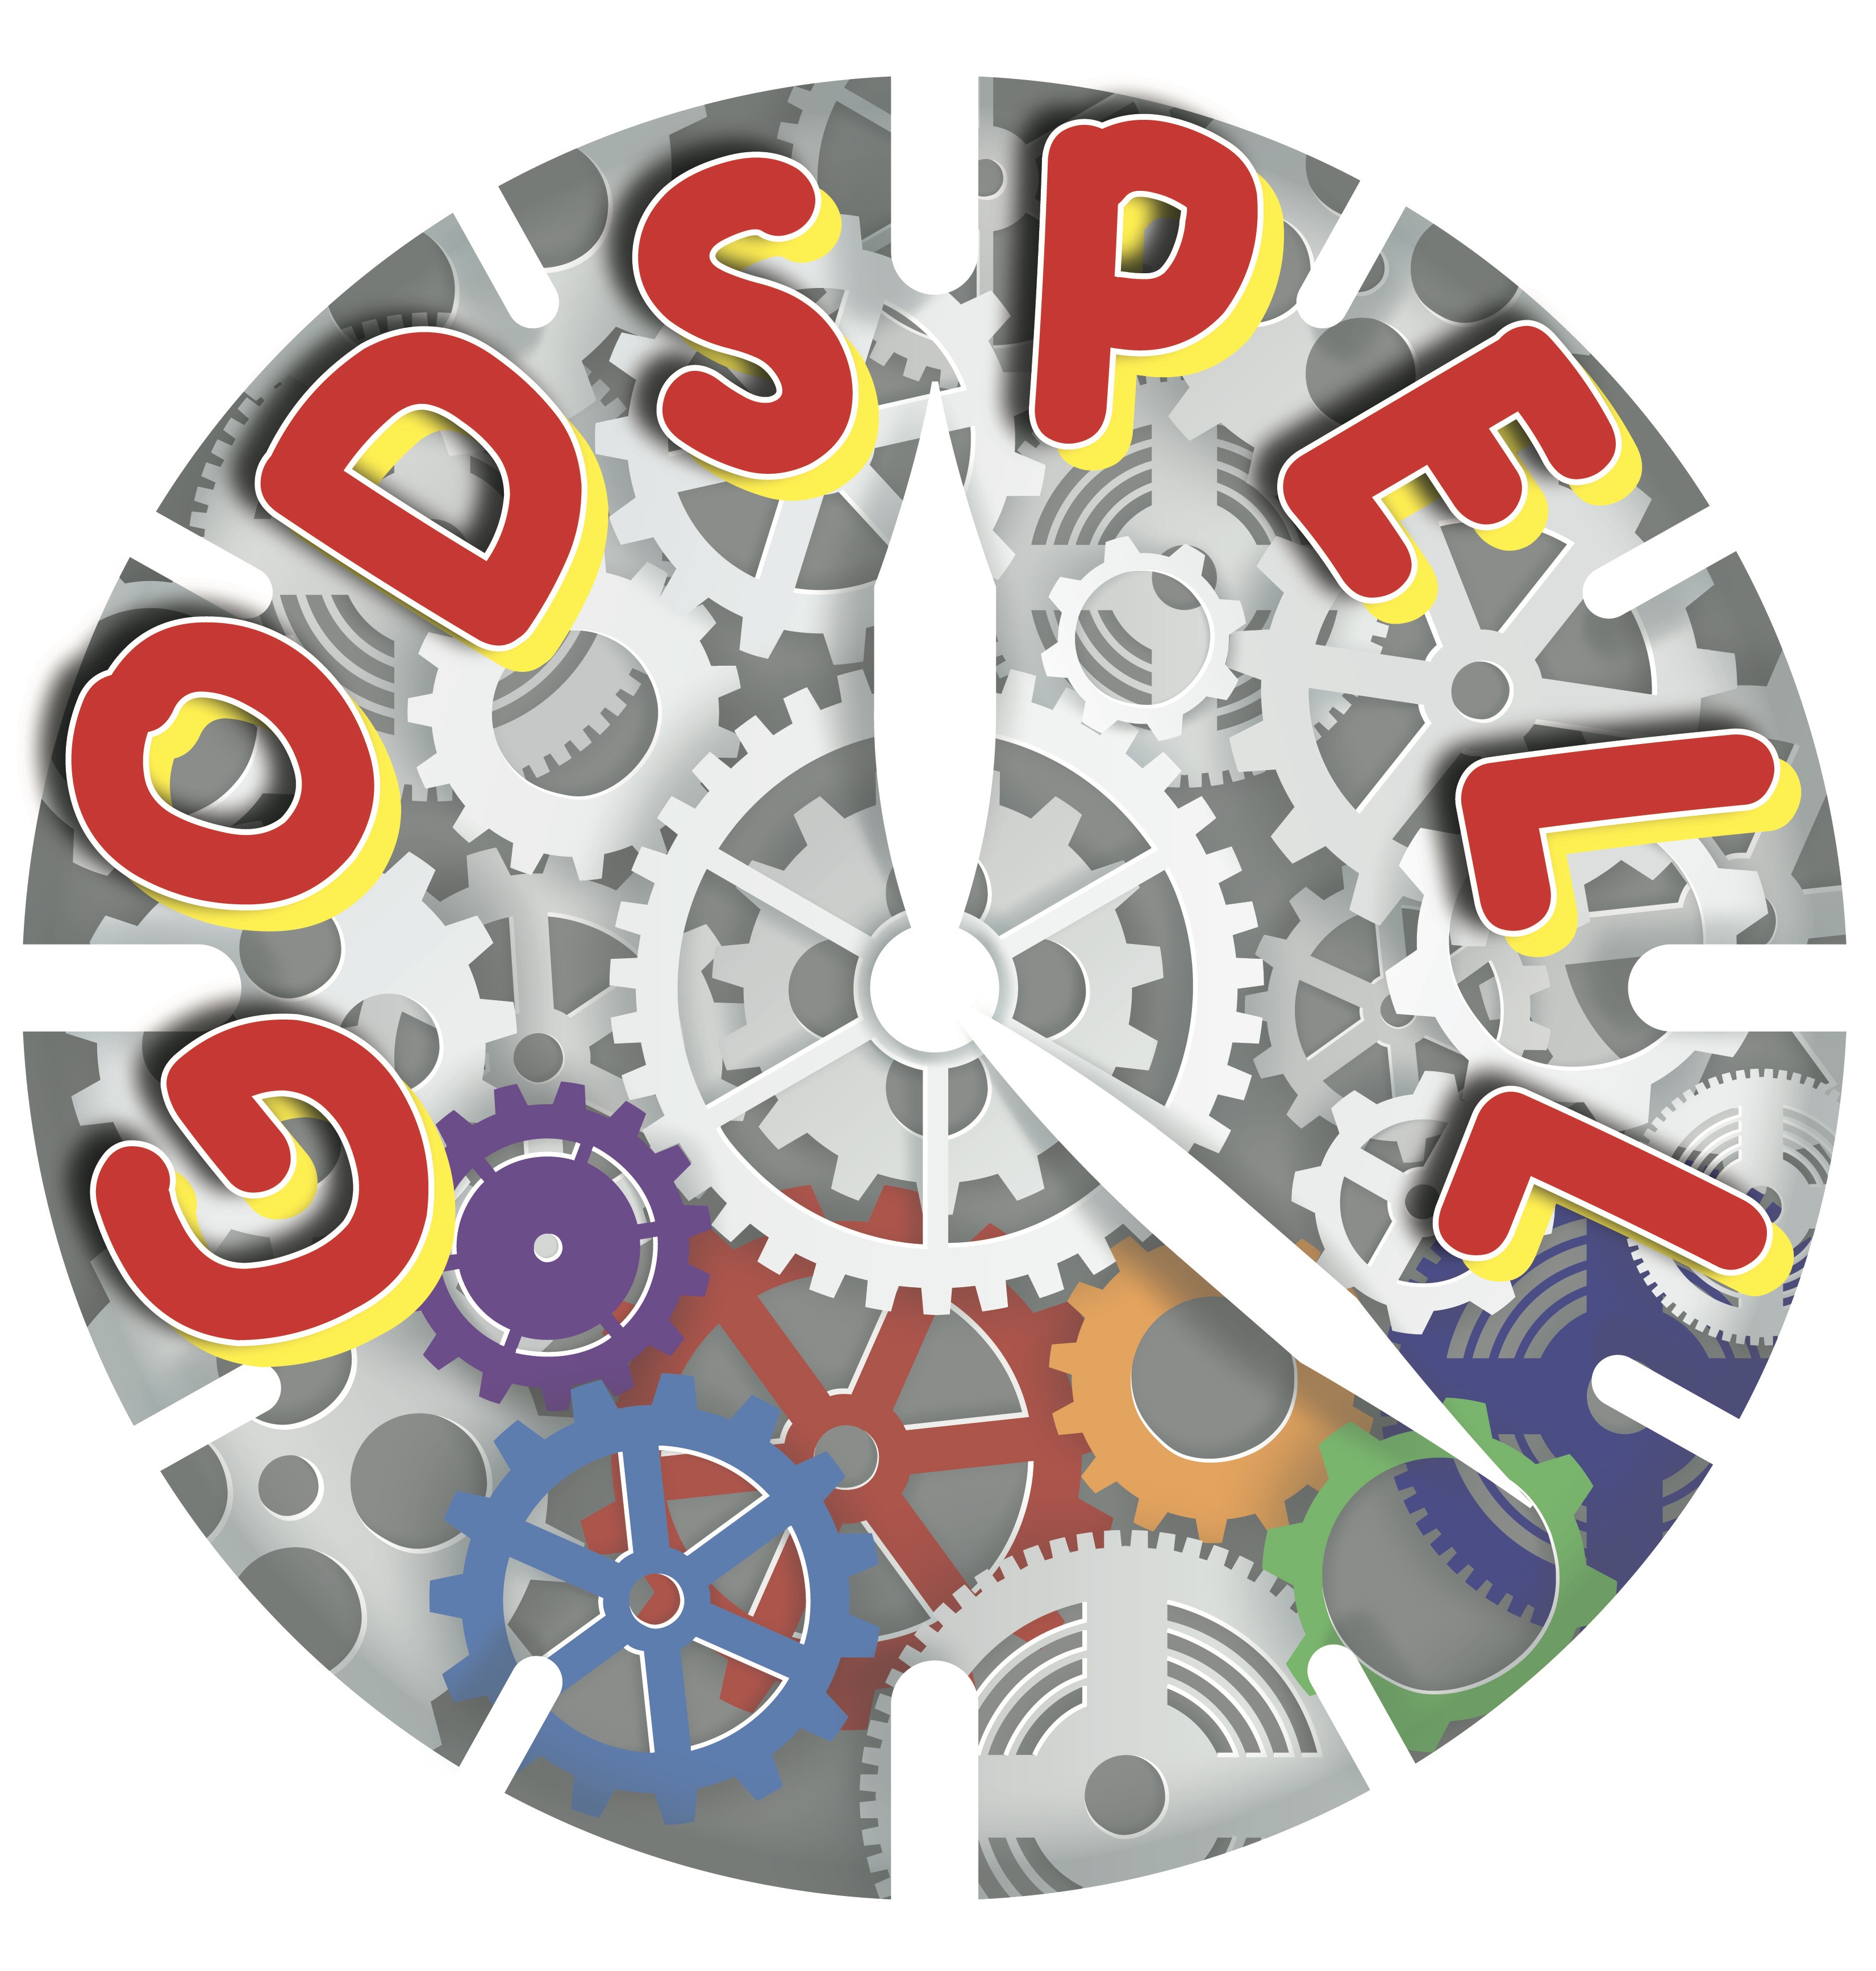 "Godspell" logo